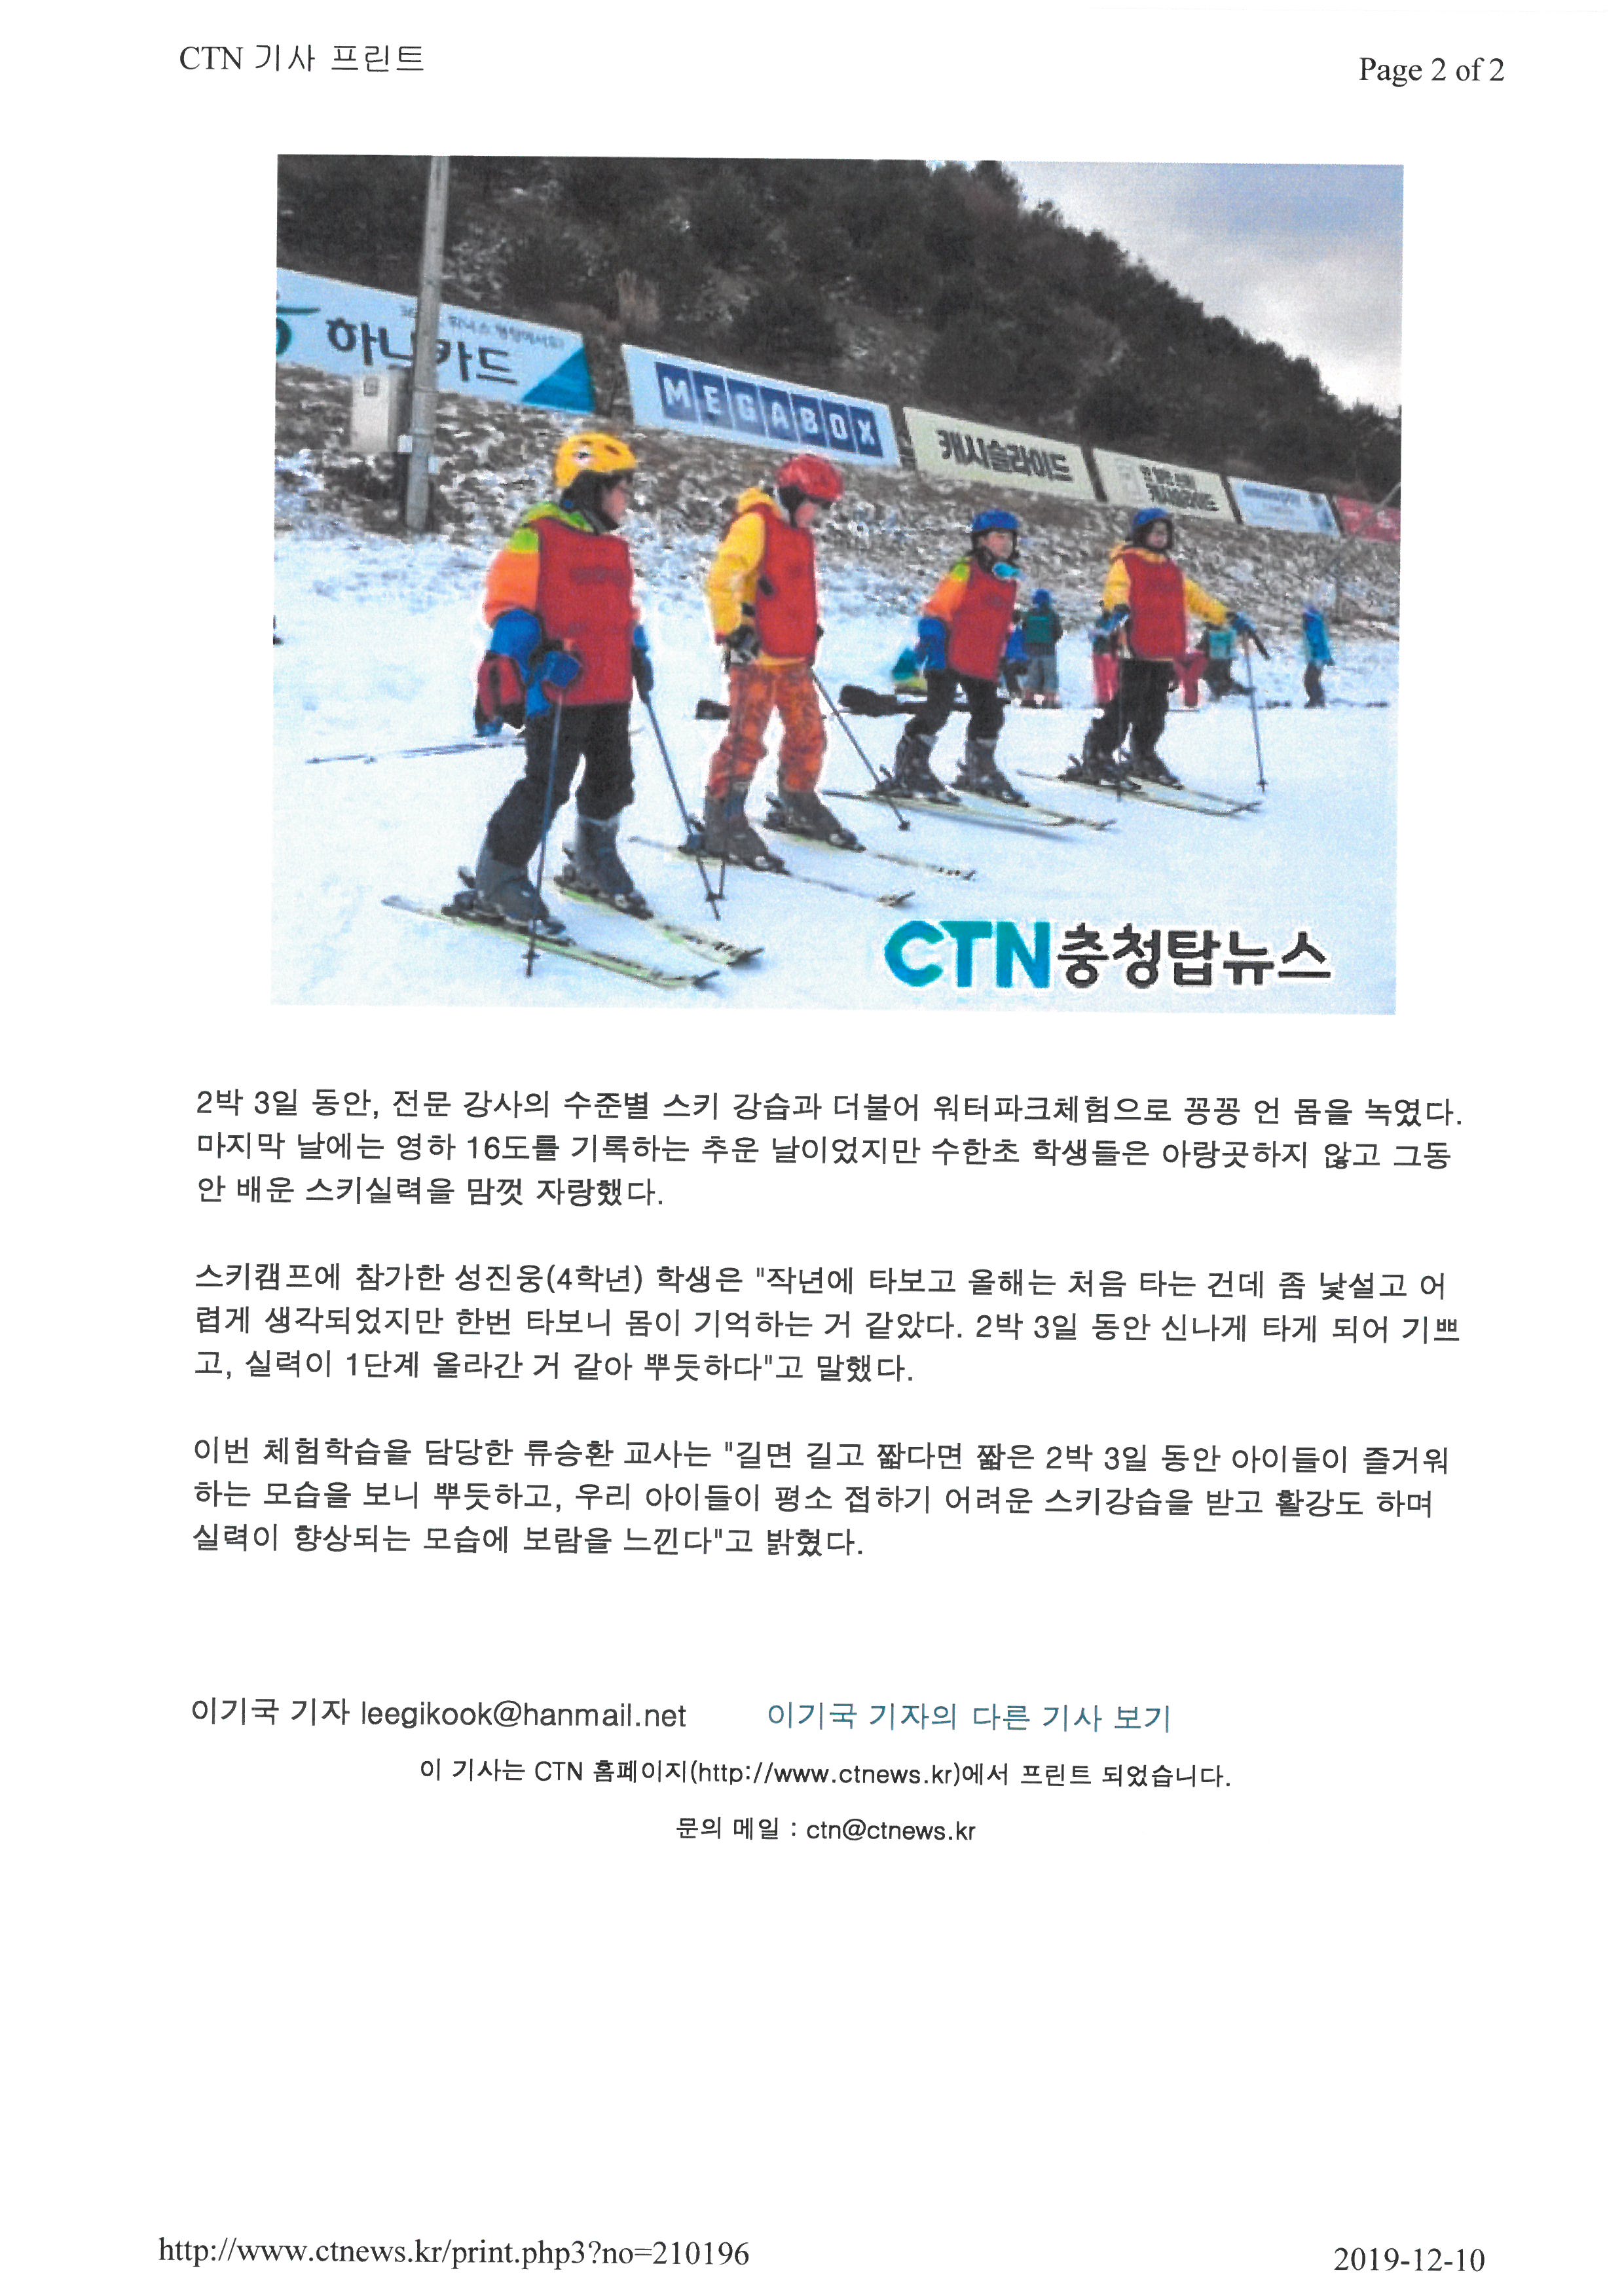 충청탑뉴스-스키캠프 (2)